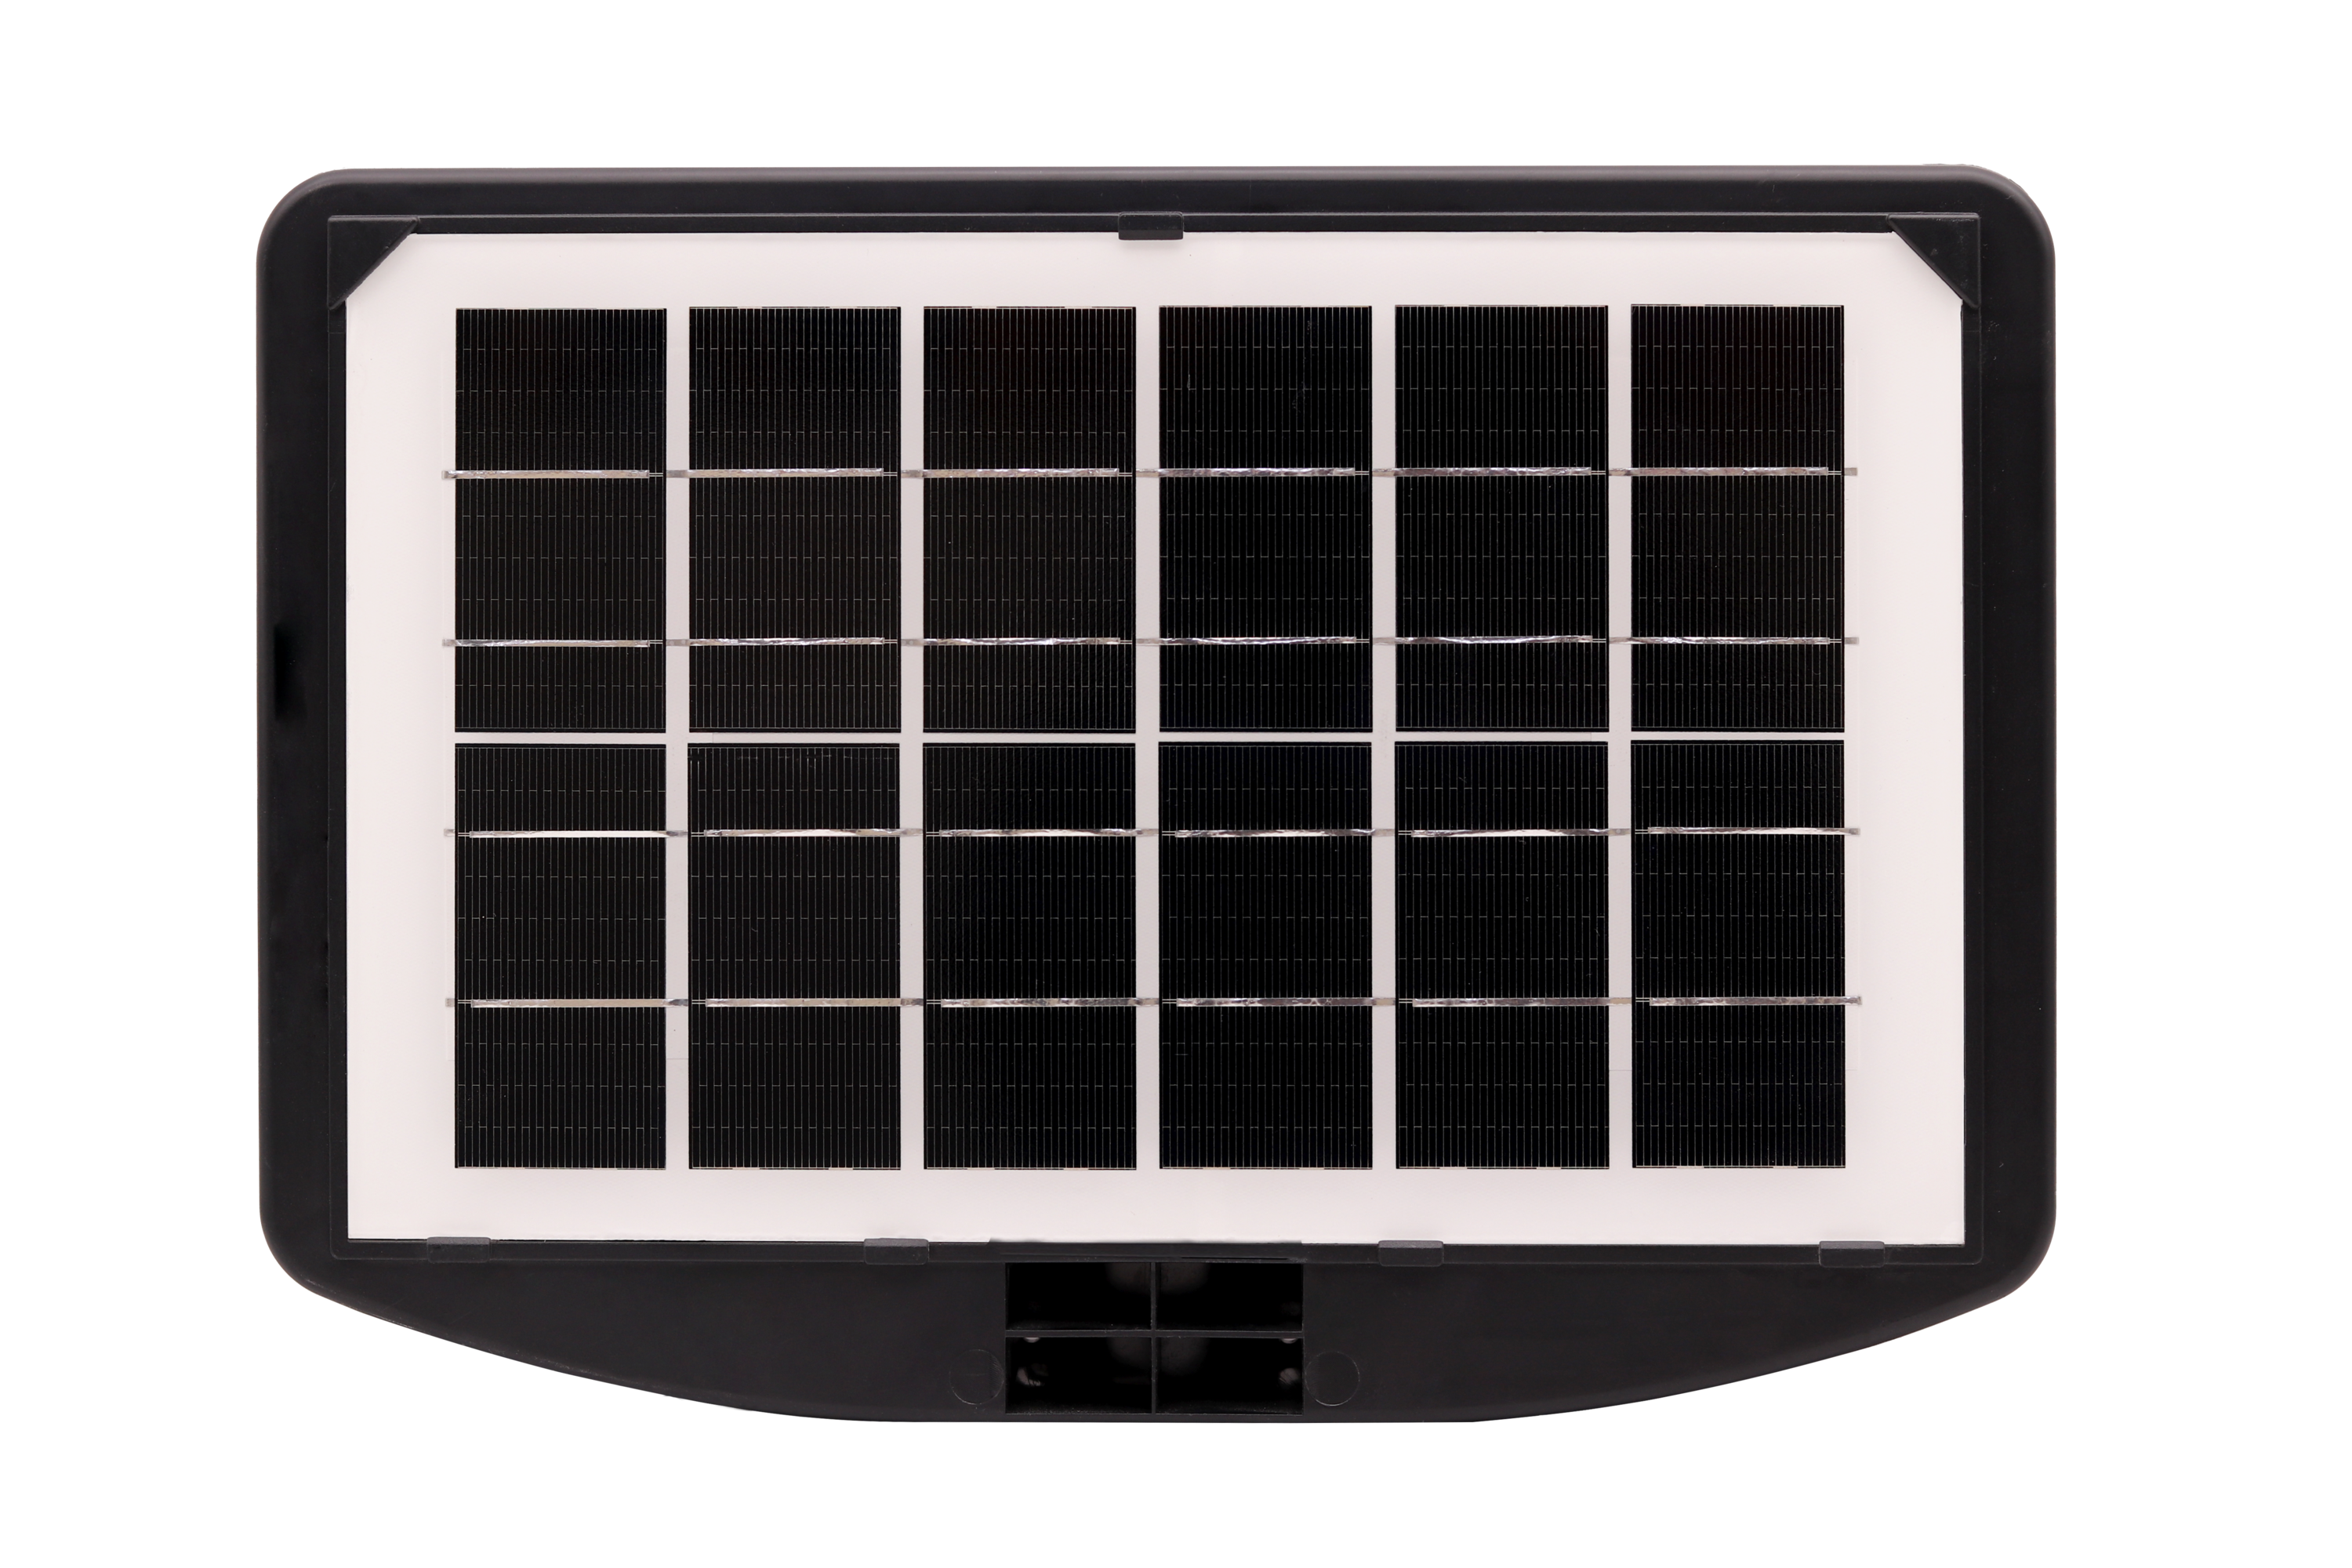 Lampara Solar De 300w Con Panel Solar + Base De Instalación